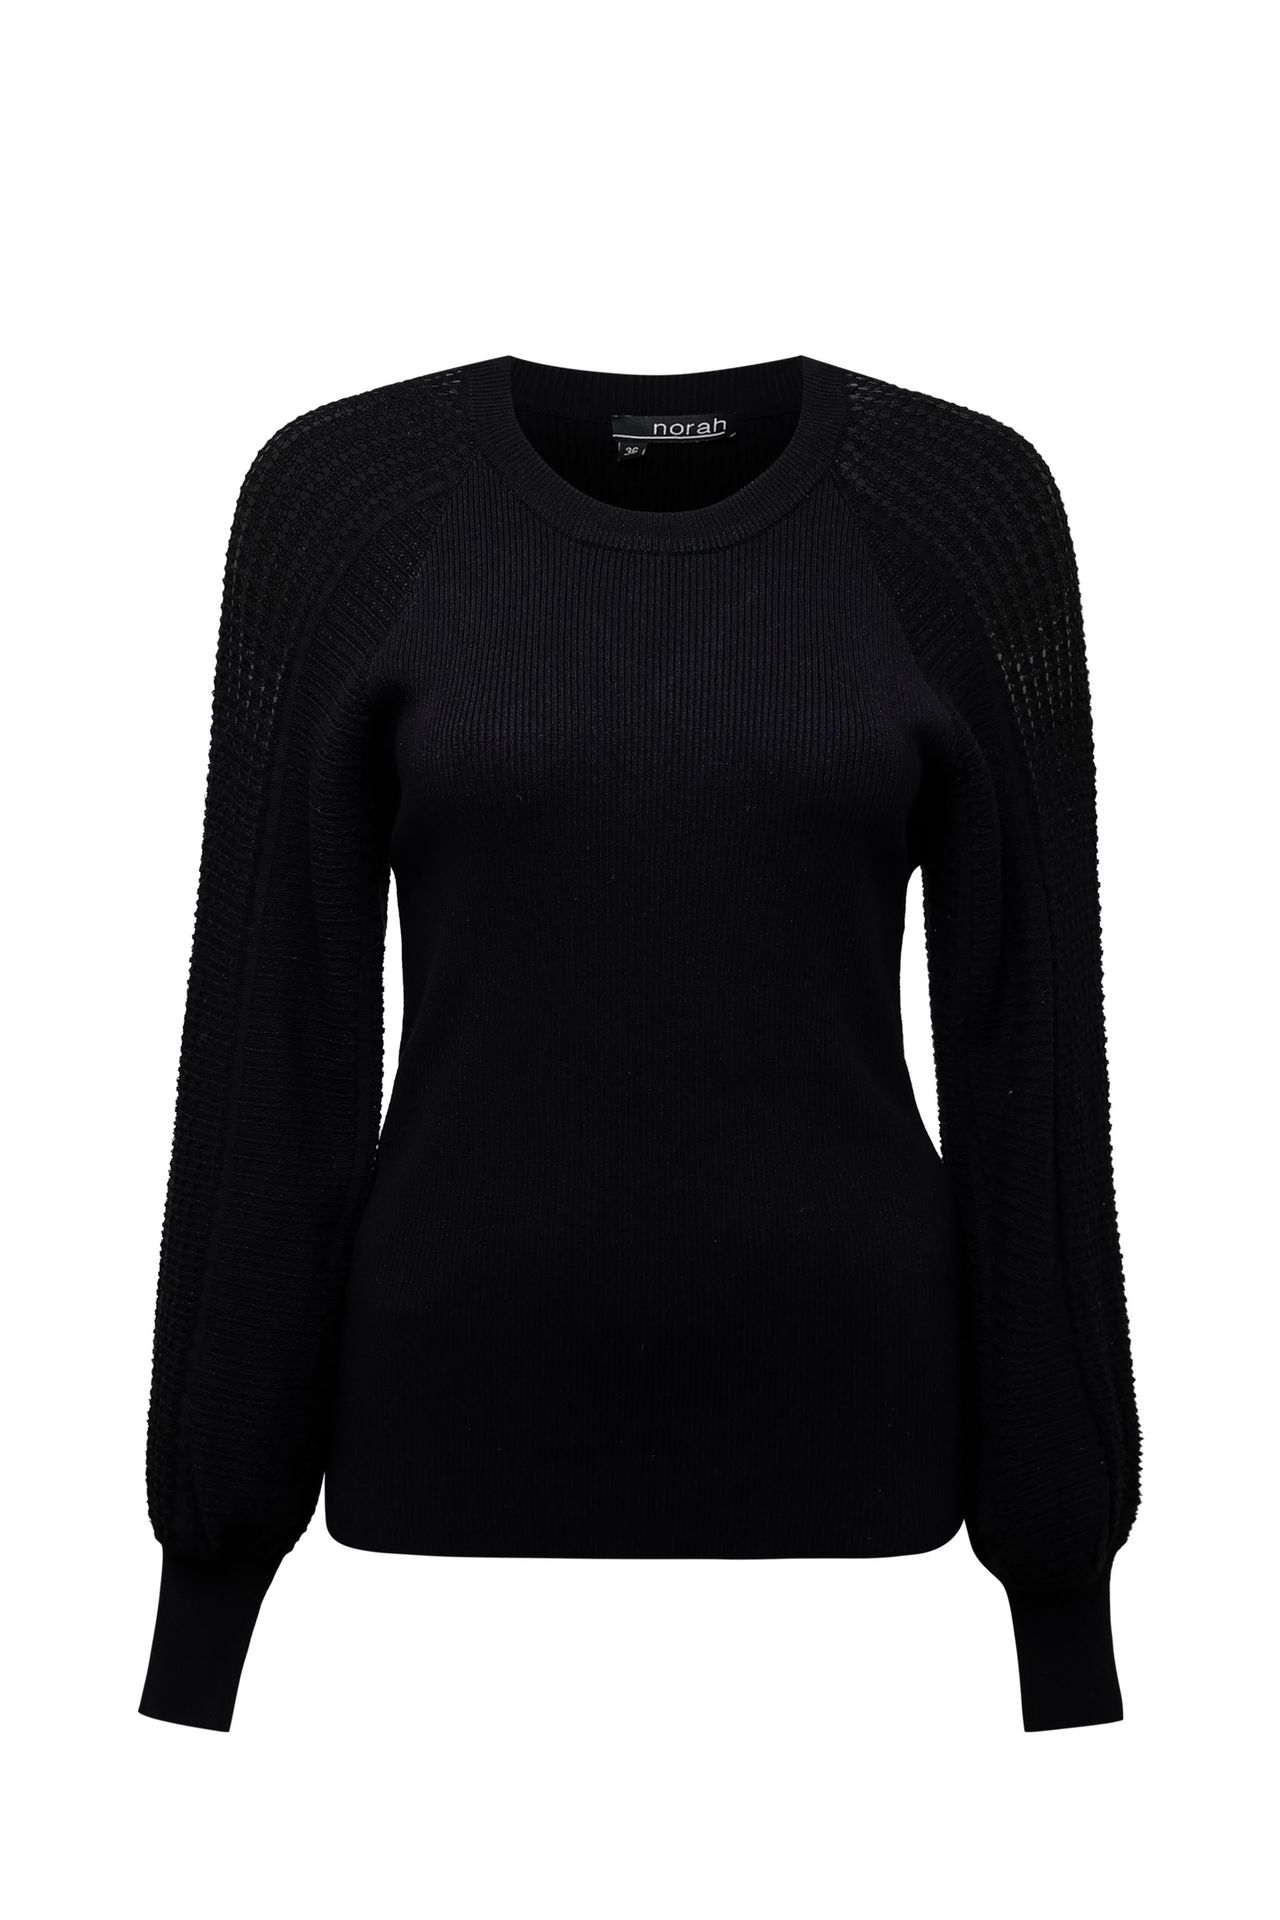 Norah Zwarte trui met gebreide mouwen black 214048-001